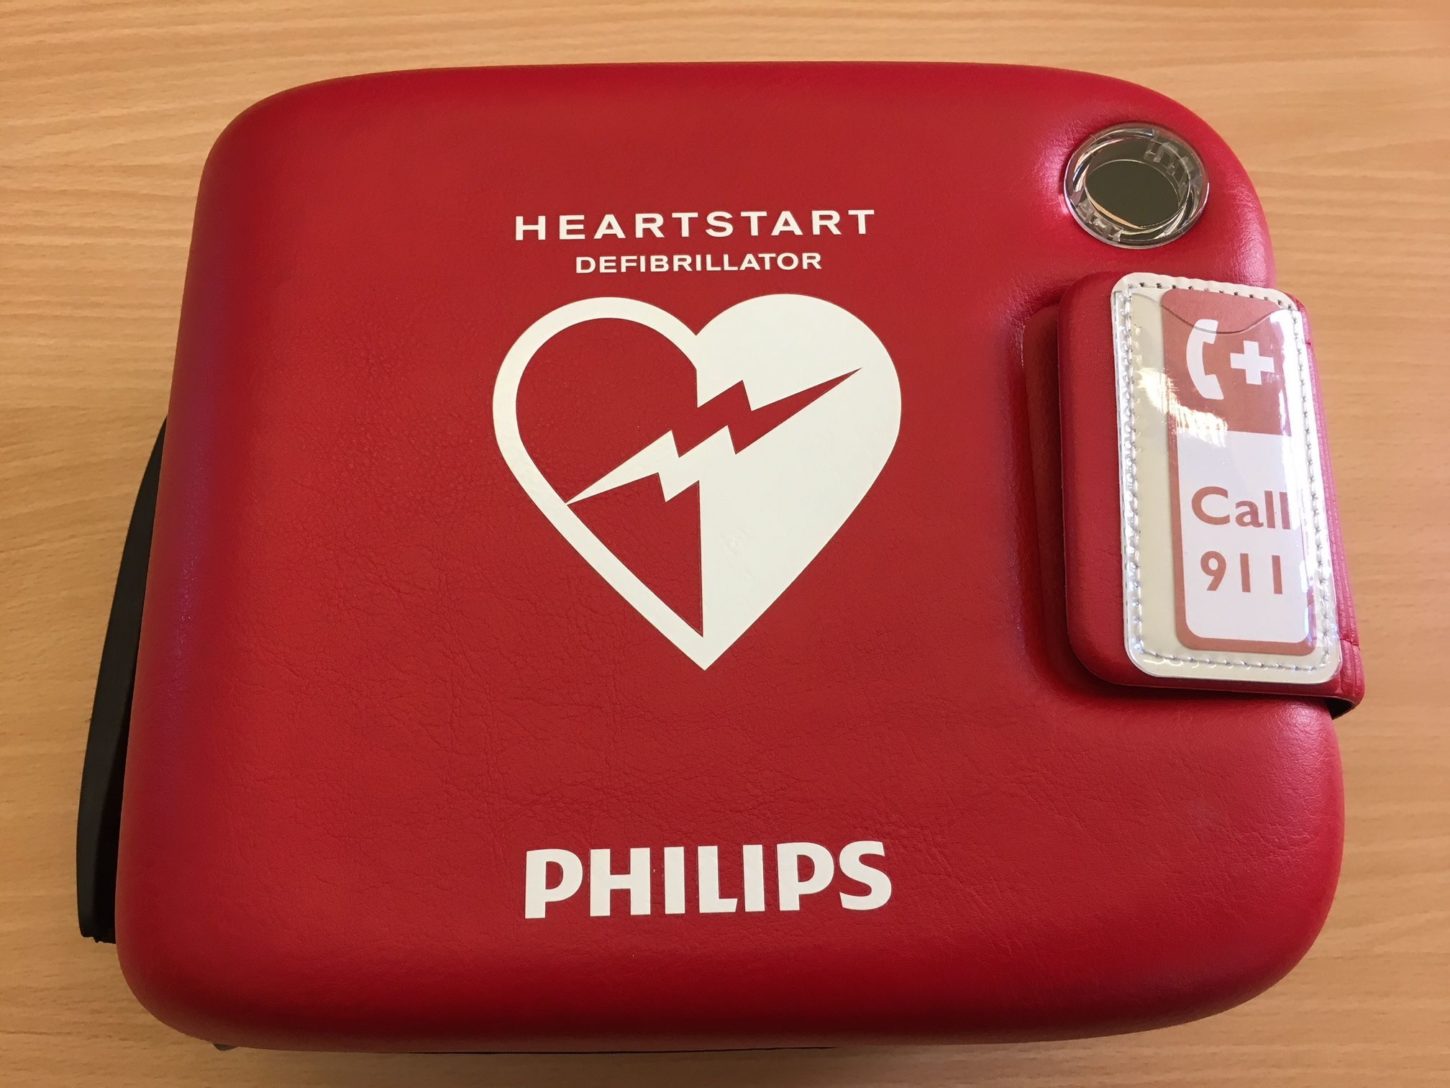 Defibrillatoren können Leben retten. Foto KIS/ Markus Klier